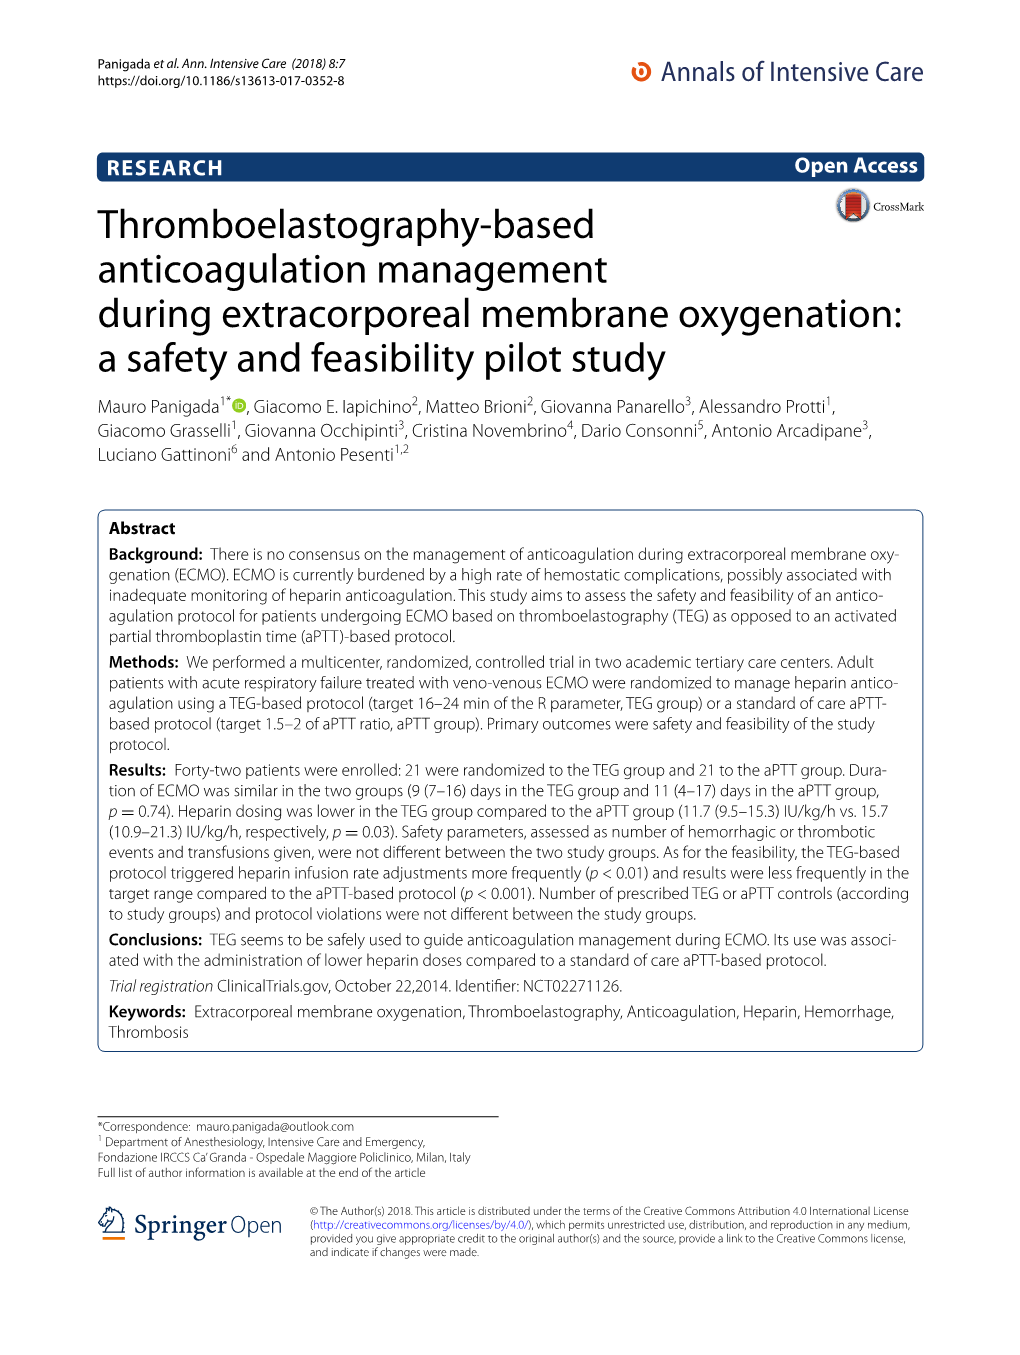 Thromboelastography-Based Anticoagulation Management